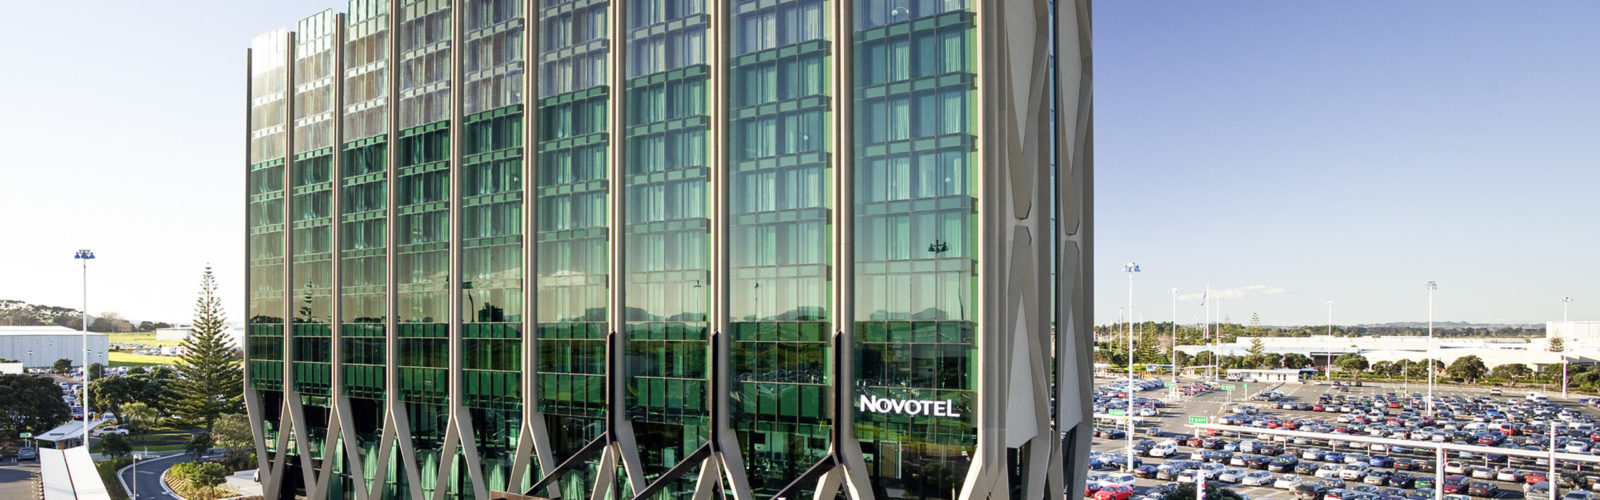 novotel-auckland-airport-facade